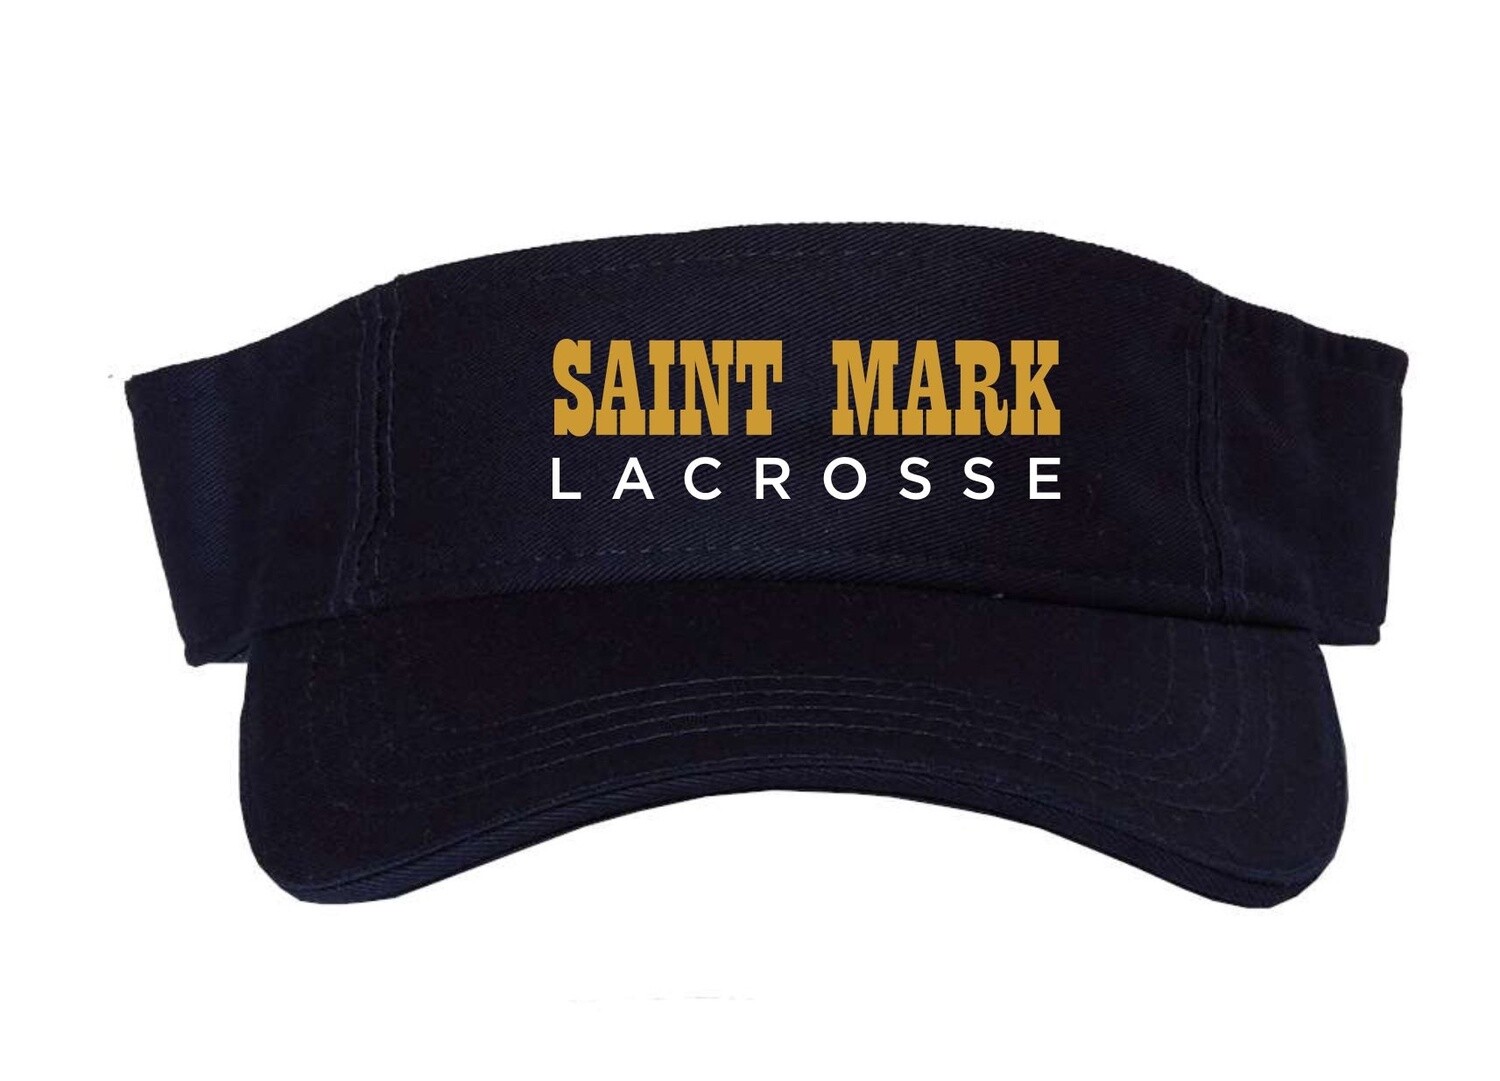 St. Mark Lacrosse Visor